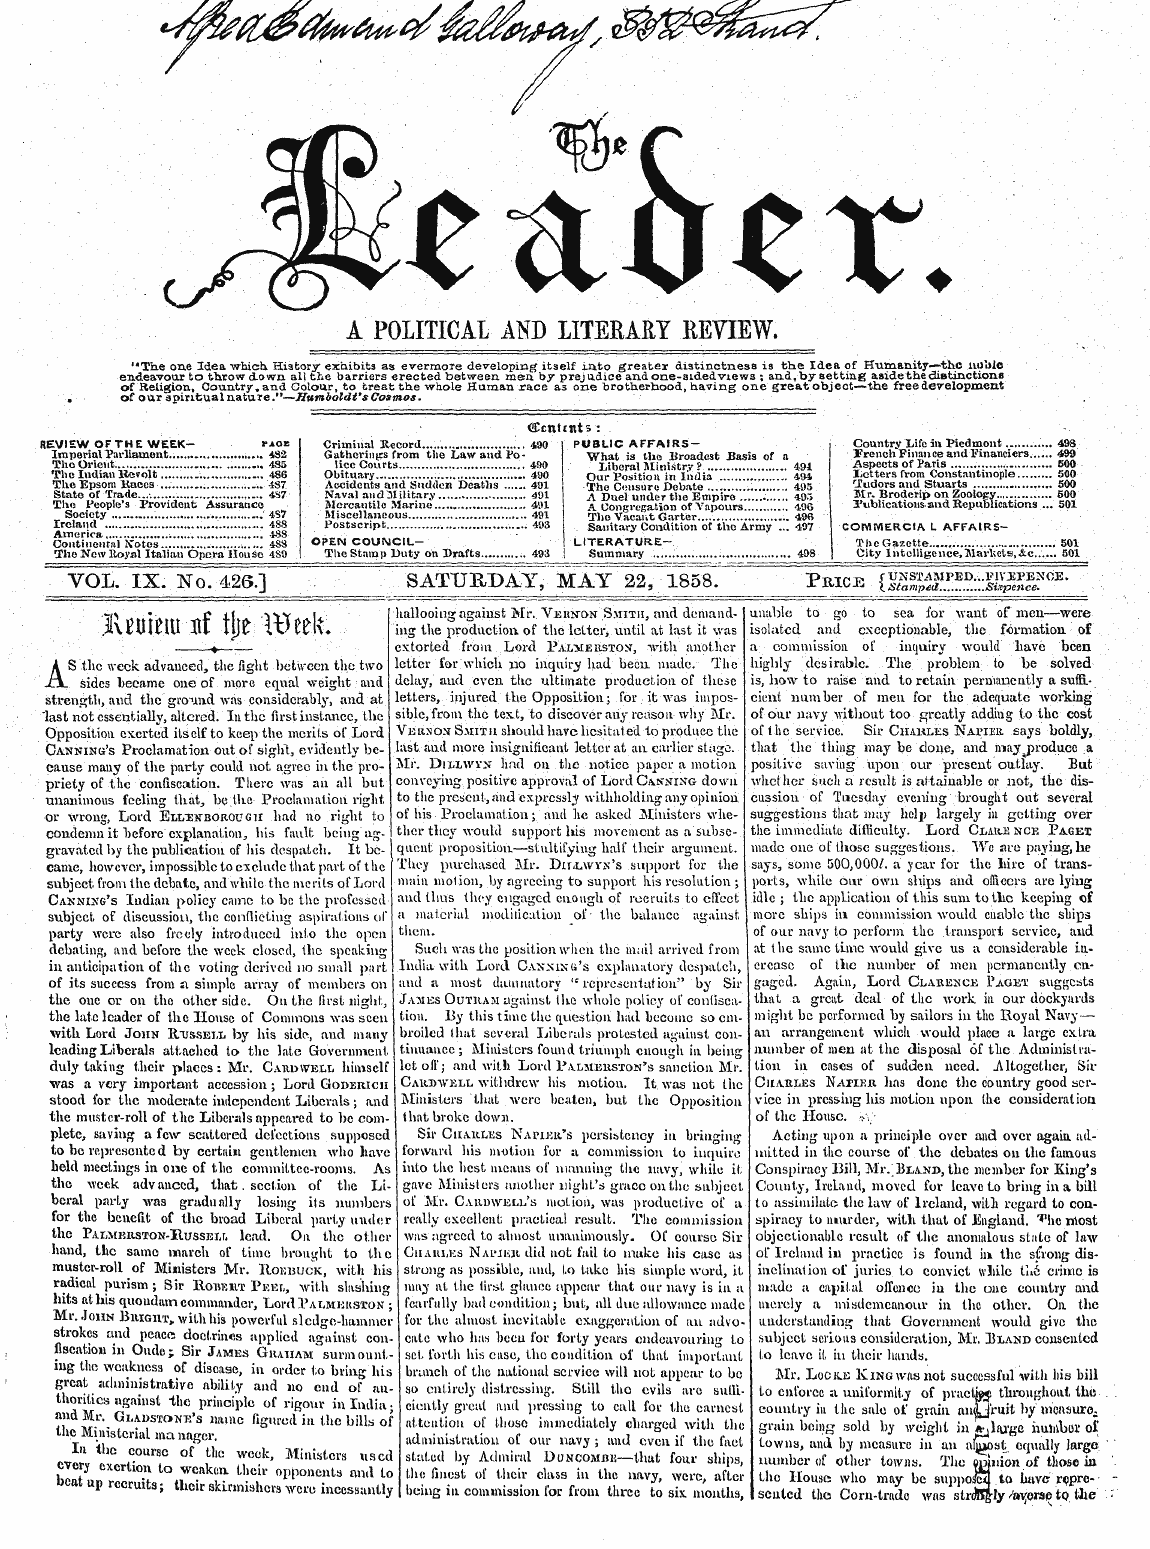 Leader (1850-1860): jS F Y, 2nd edition - Vol. Ix.,Yo. 426.] Saturday, May 22 ? 18...